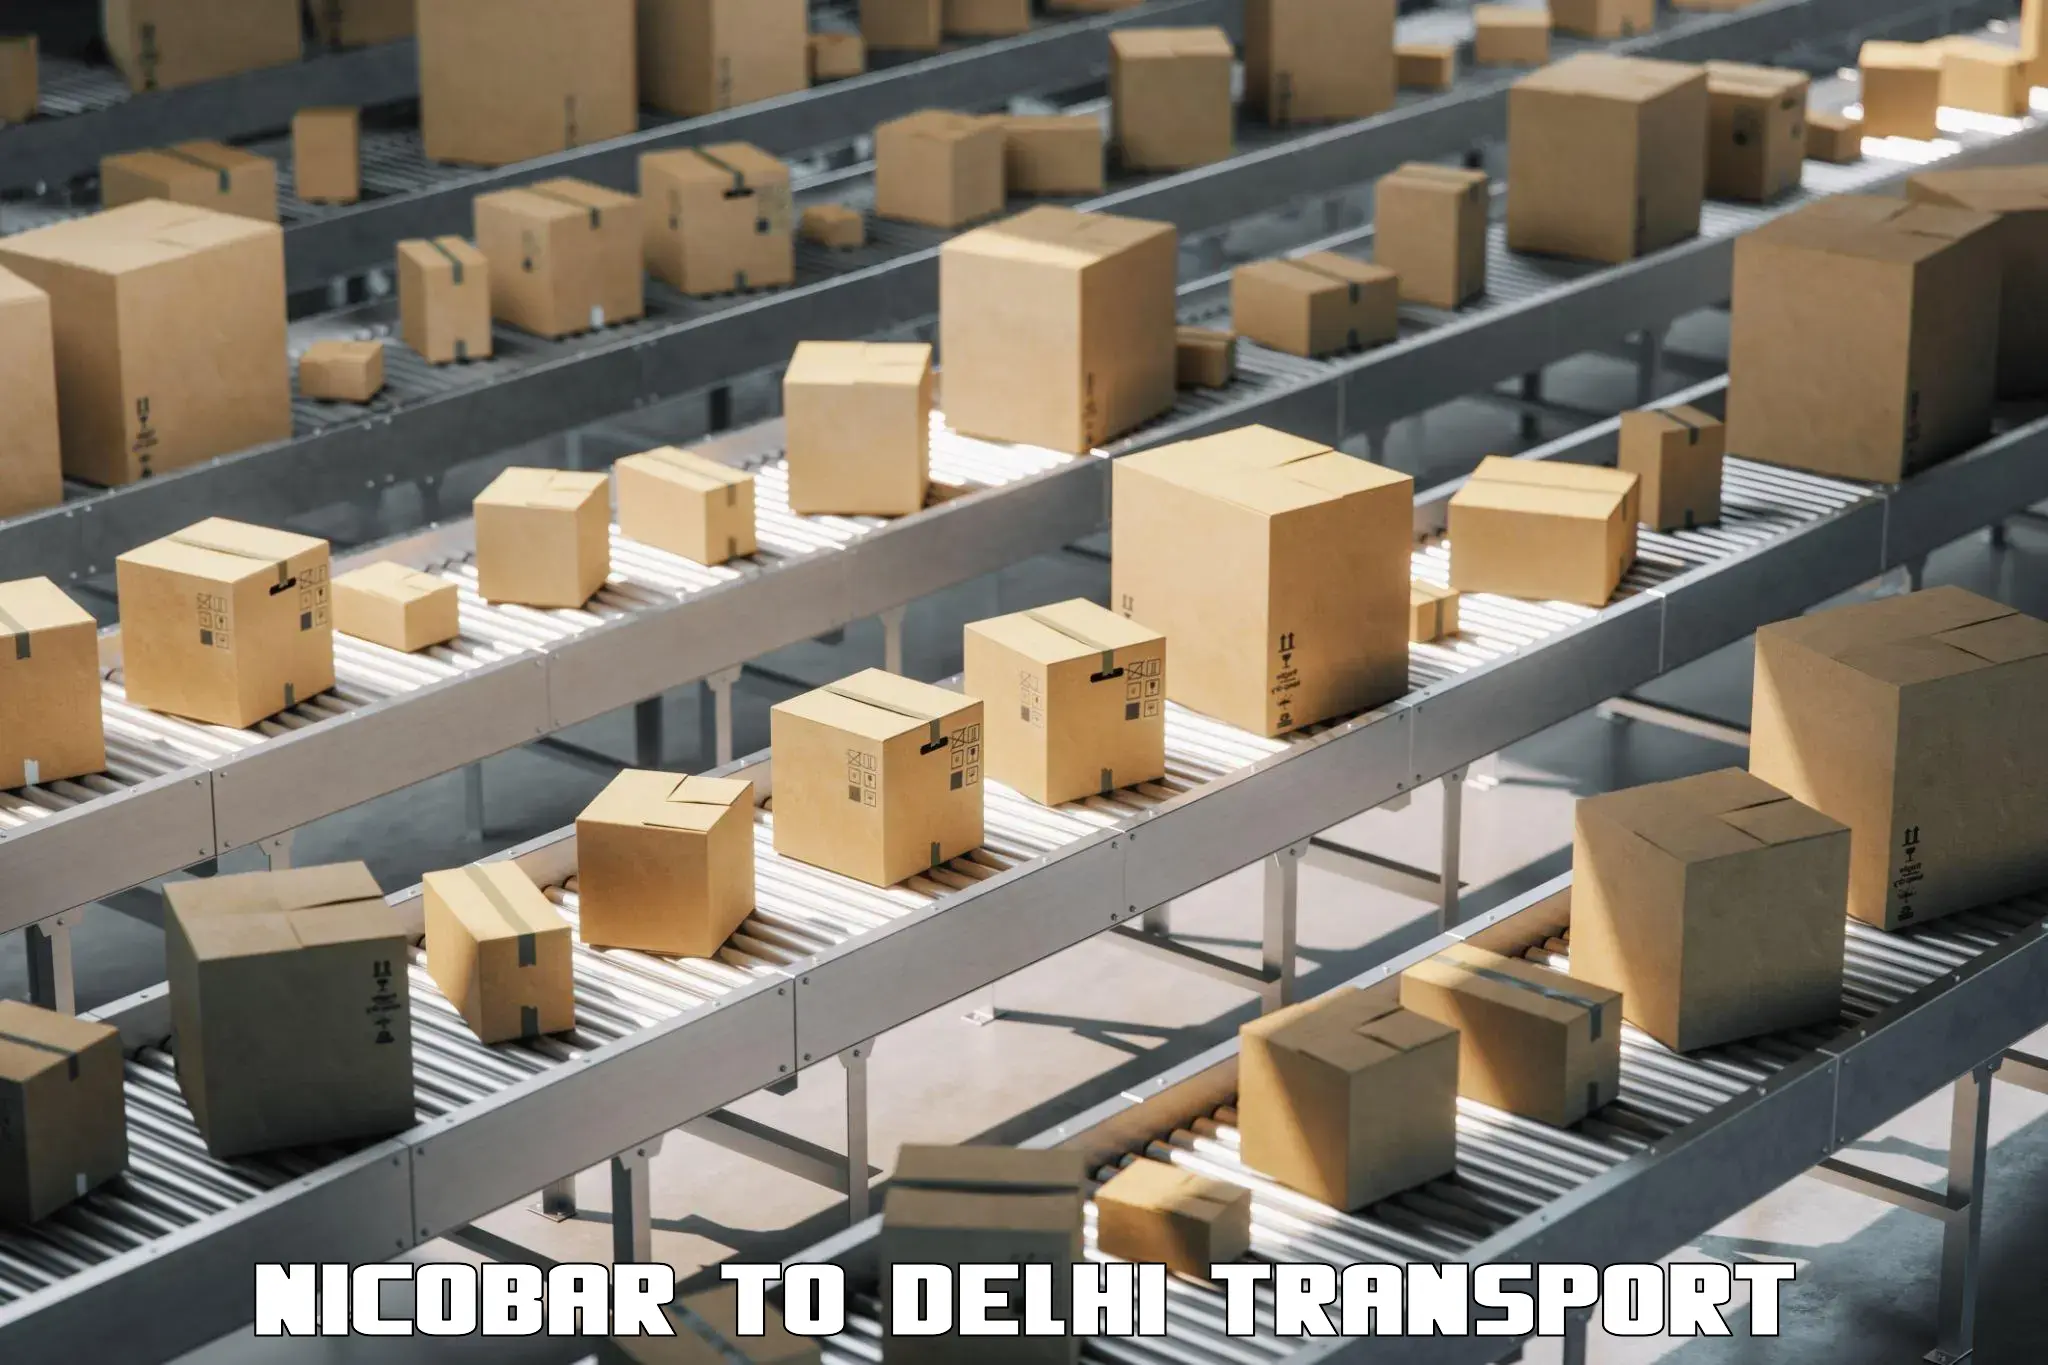 Bike shipping service Nicobar to Delhi